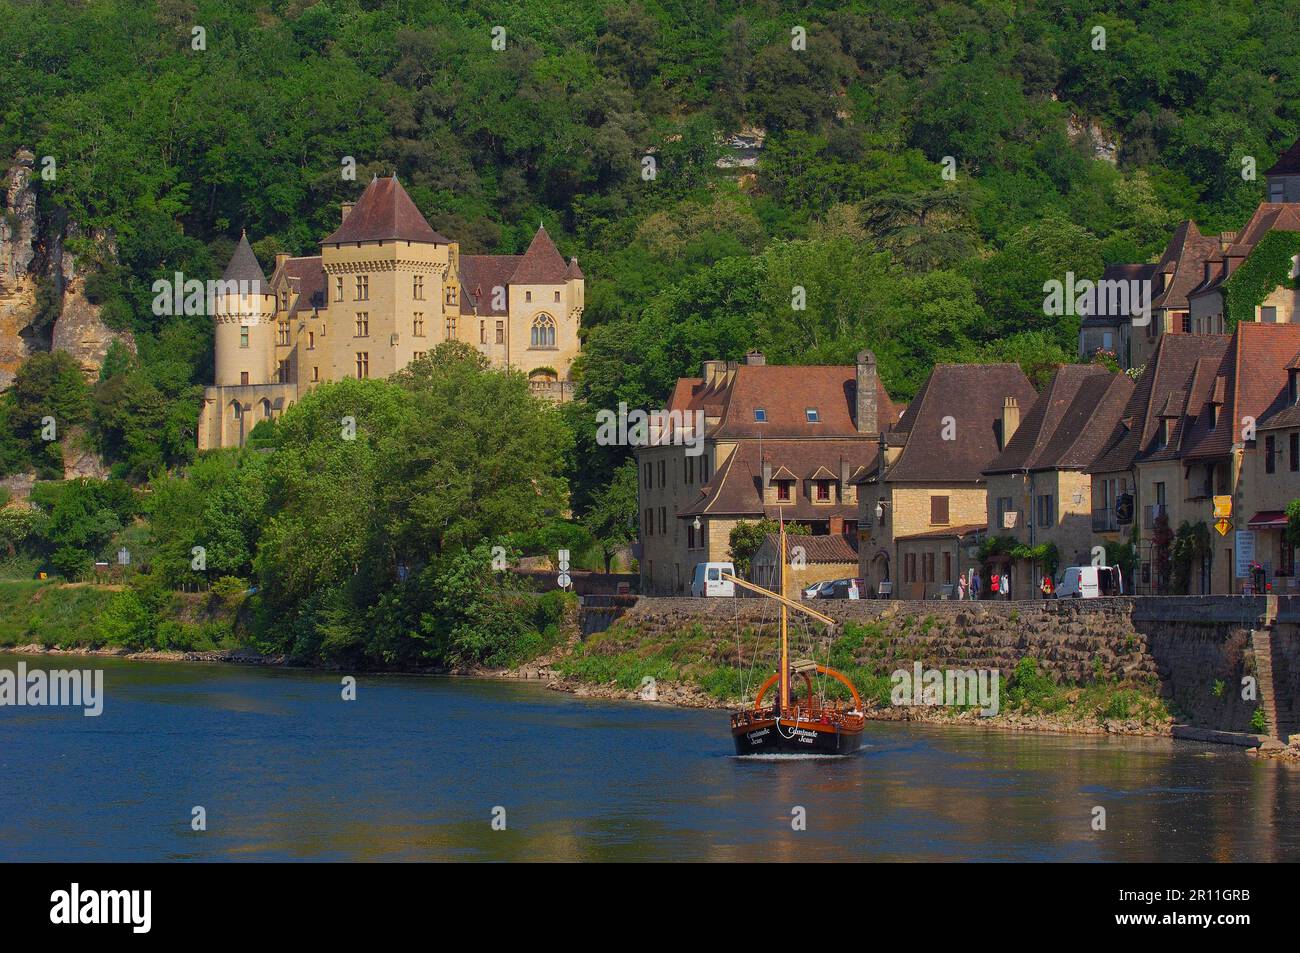 La Roque Gageac, Malartrie Castle, Perigord, River Dordogne, Dordogne River, Tourist boat, gabare boat, Tour boats, Dordogne valley, Perigord Noir Stock Photo